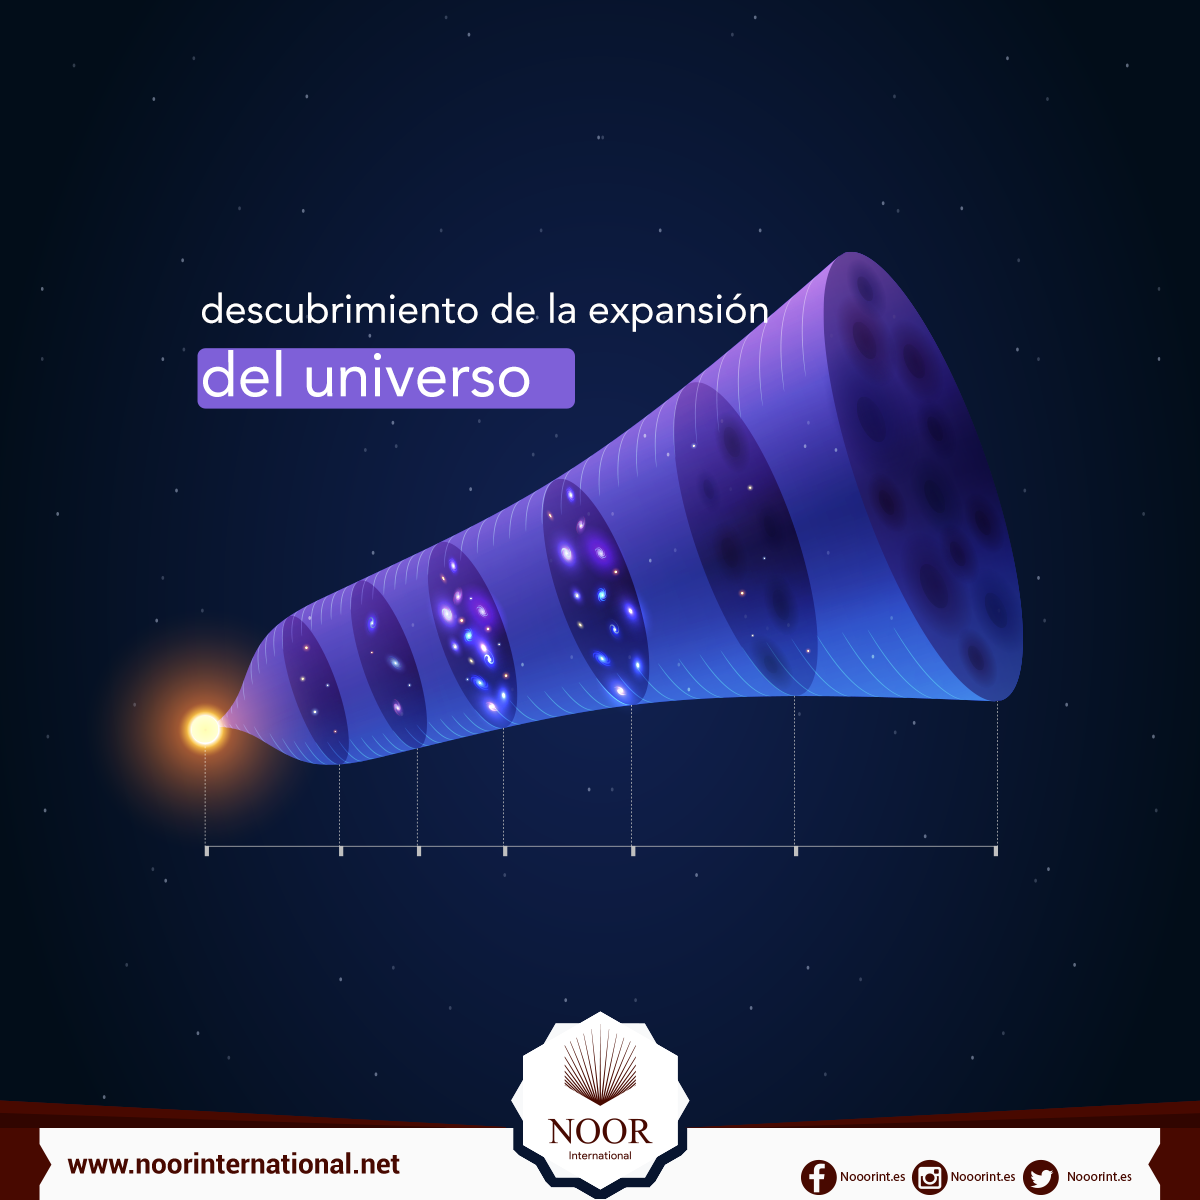 El descubrimiento de la expansión del universo